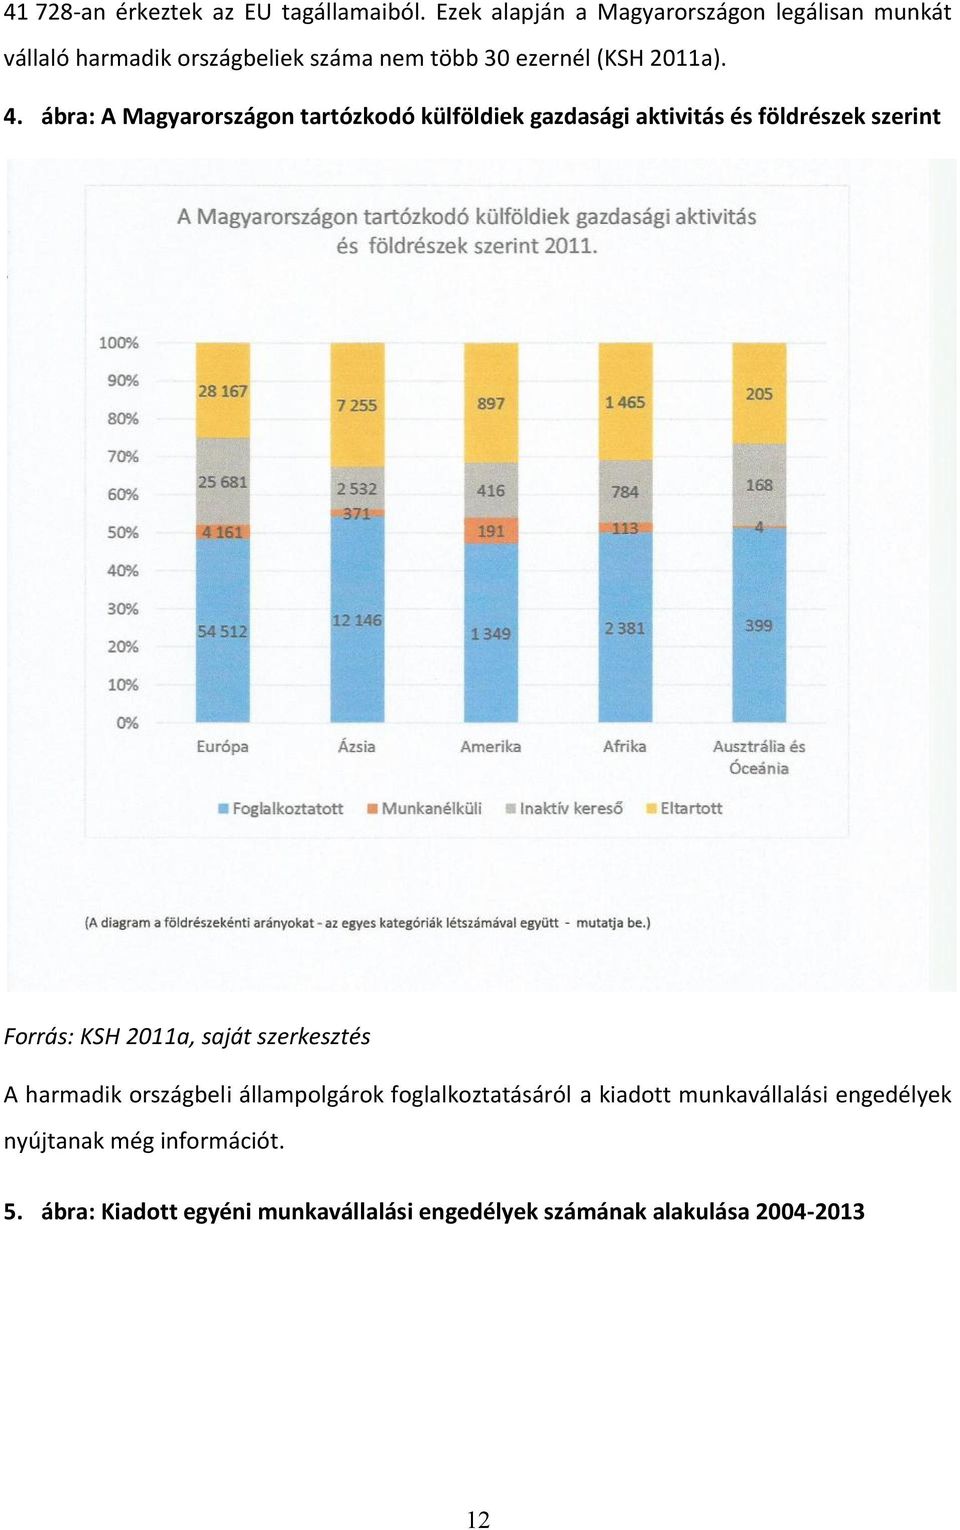 ábra: A Magyarországon tartózkodó külföldiek gazdasági aktivitás és földrészek szerint Forrás: KSH 2011a, saját